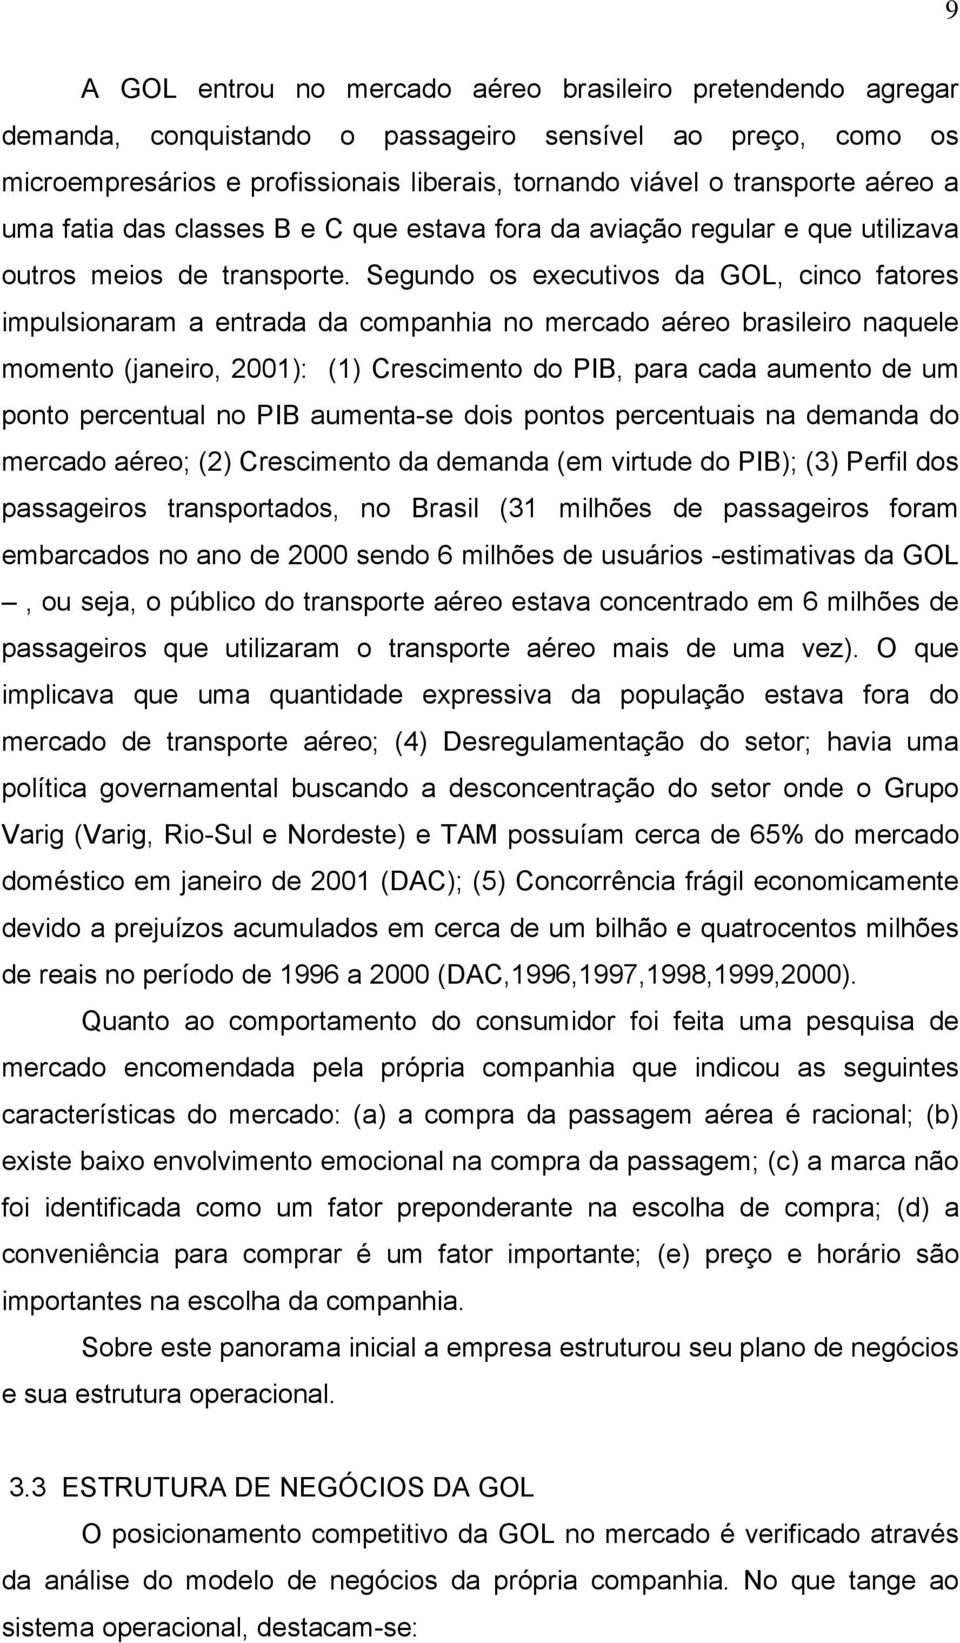 Segundo os executivos da GOL, cinco fatores impulsionaram a entrada da companhia no mercado aéreo brasileiro naquele momento (janeiro, 2001): (1) Crescimento do PIB, para cada aumento de um ponto